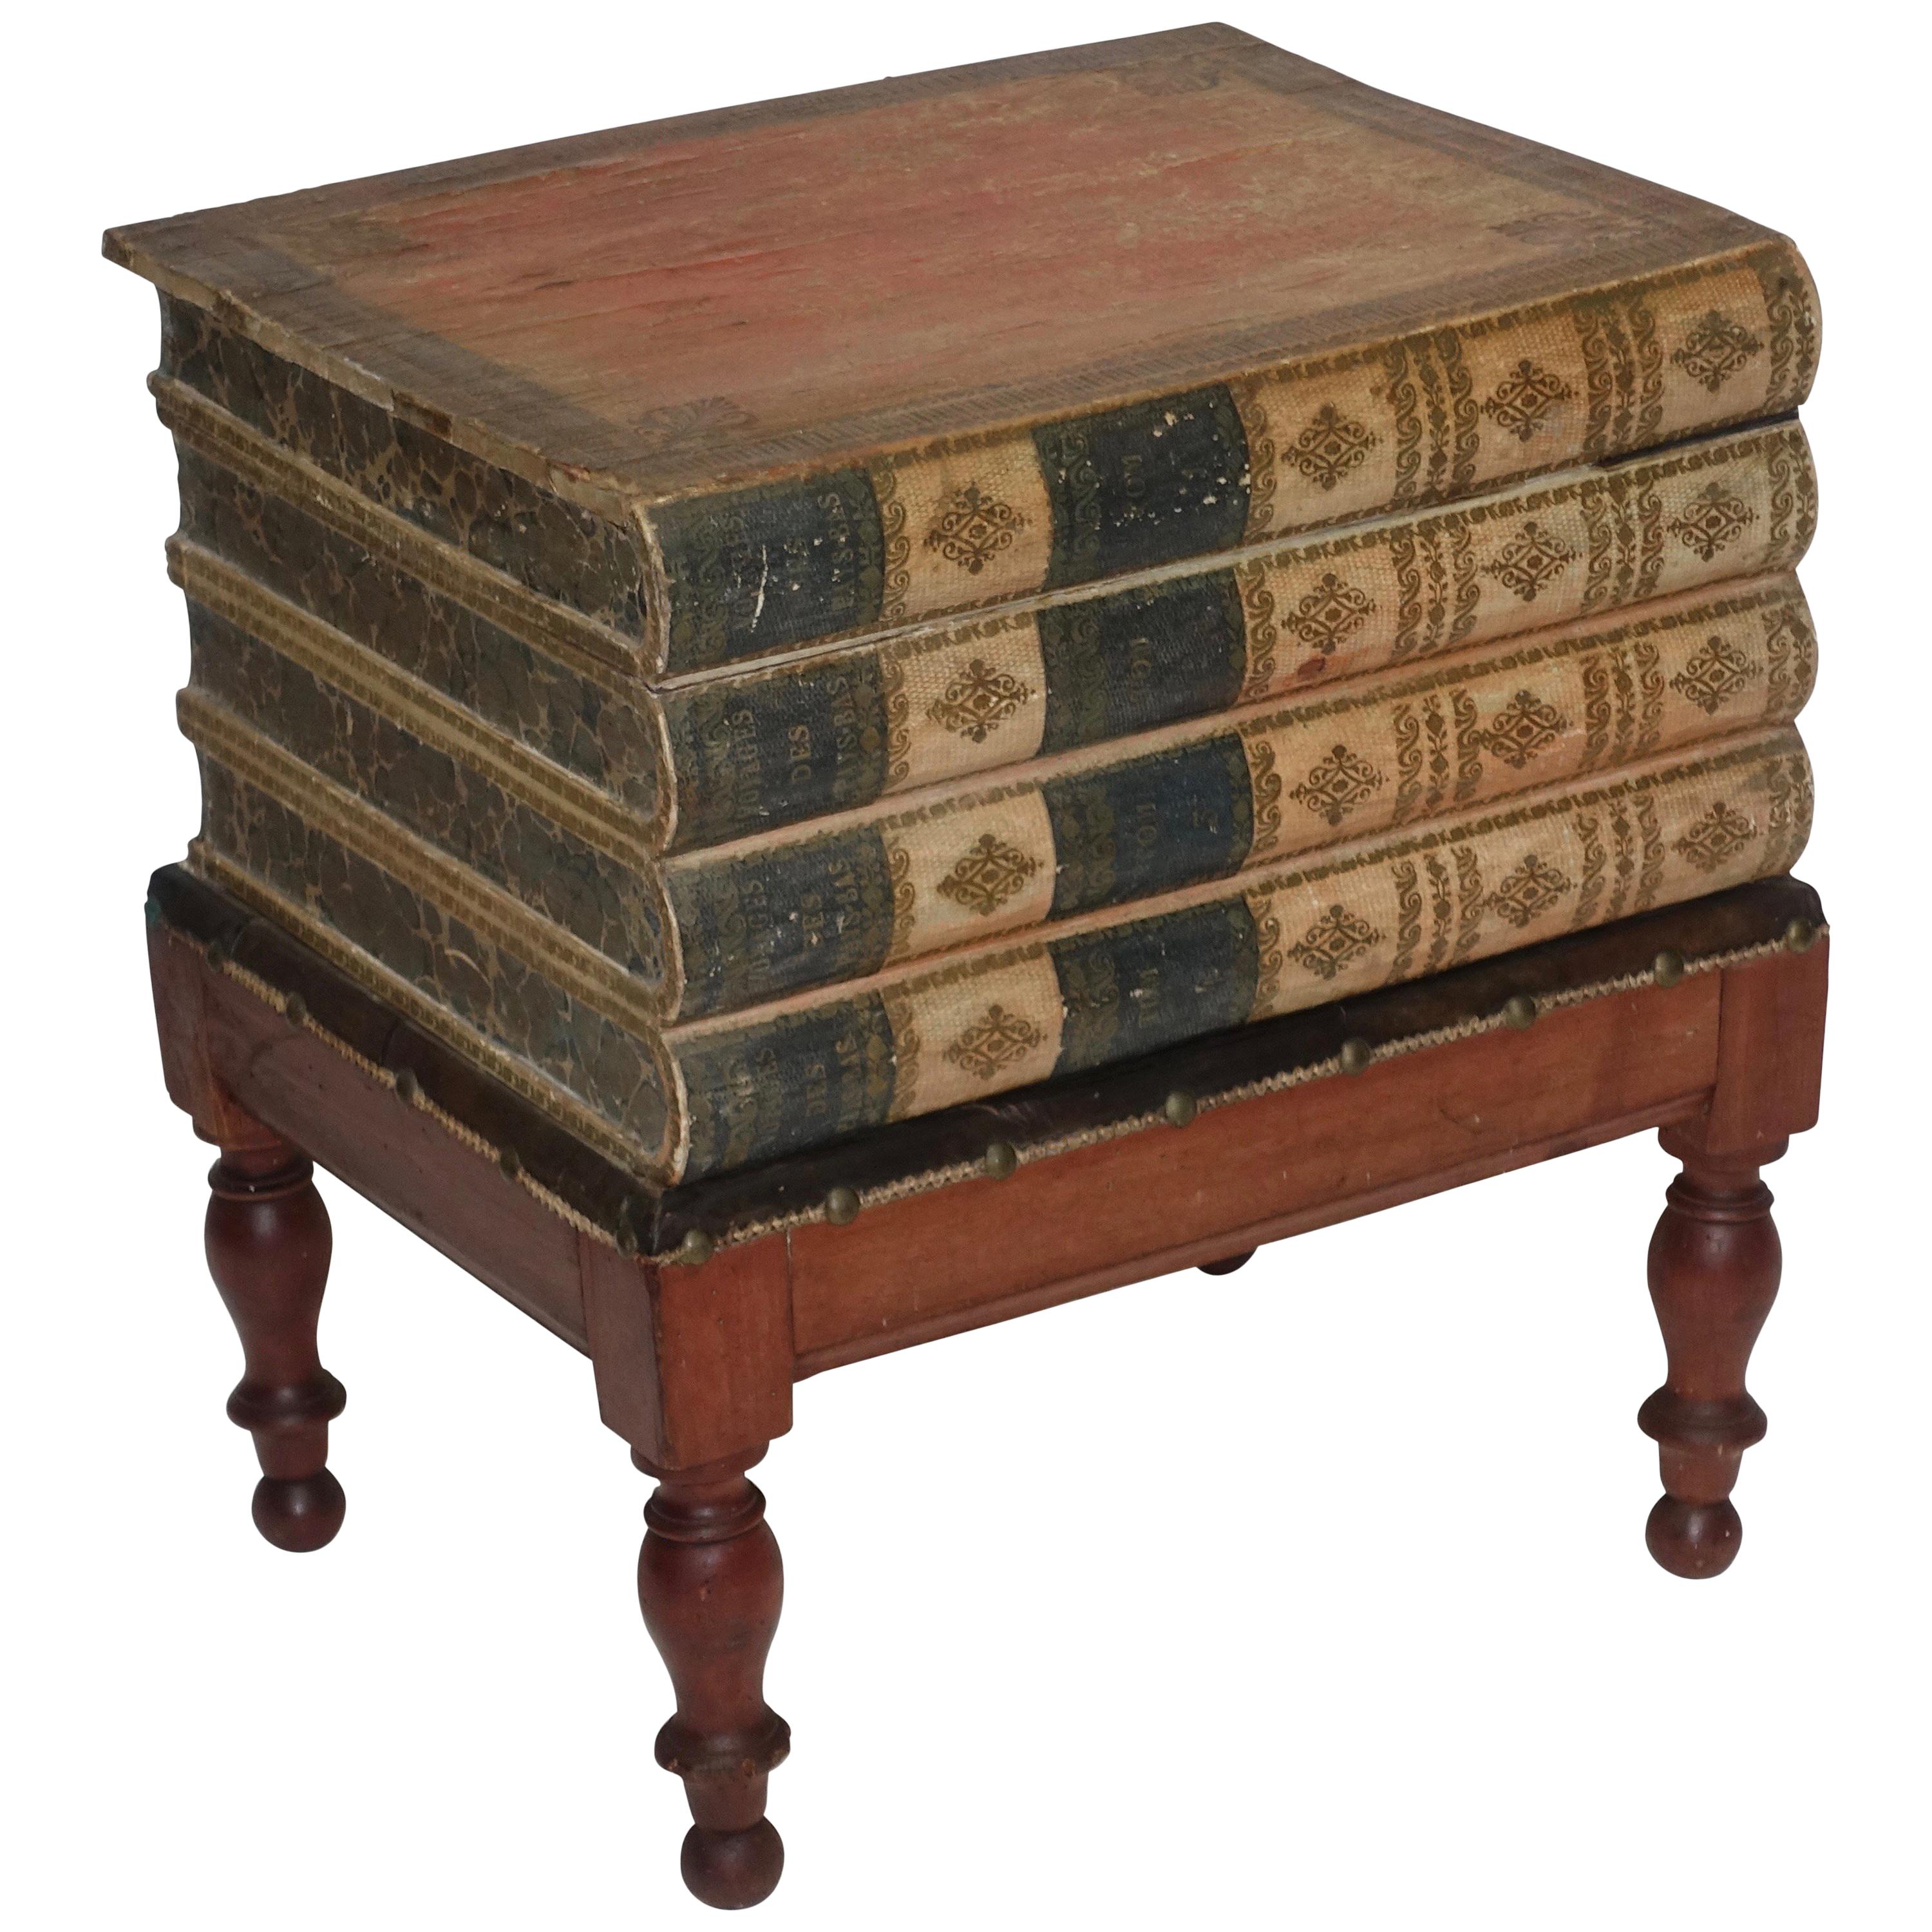 Regency-Leder-Kunstbuchkasten auf bemaltem Ständer oder Beistelltisch, englisch, um 1830